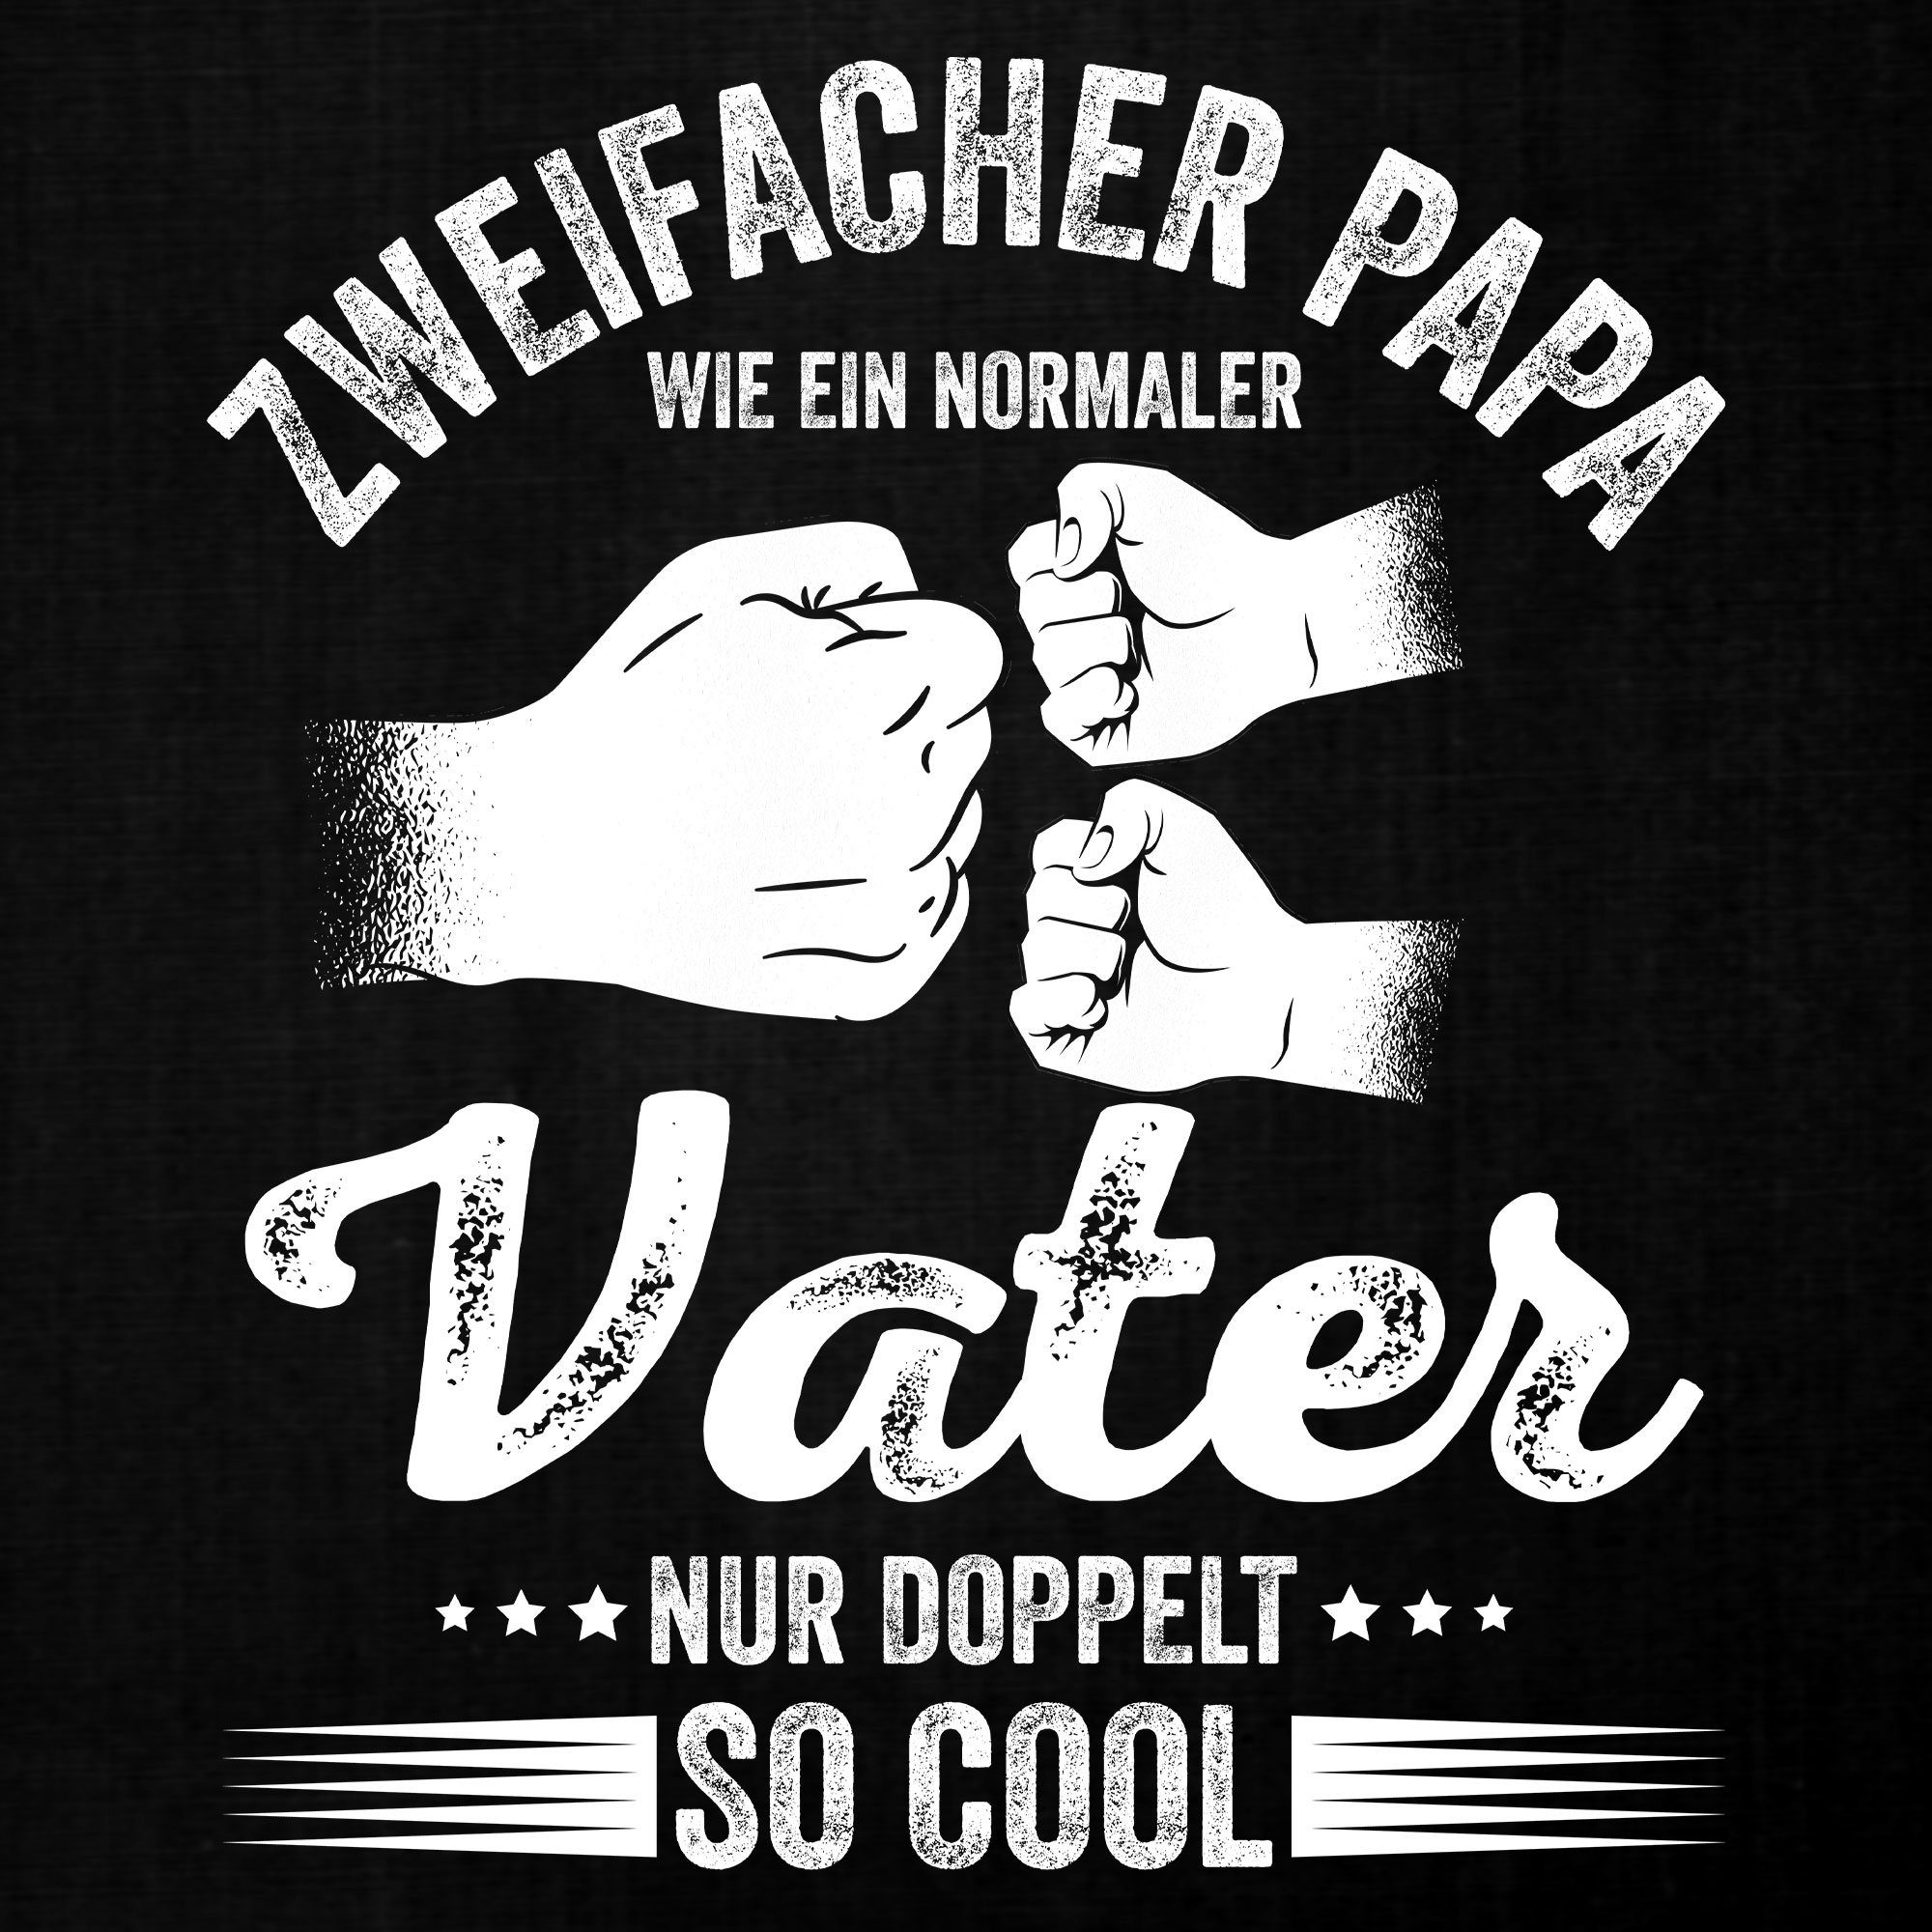 T-Shirt cool Formatee Quattro Herren (1-tlg) - Vater Vatertag Schwarz so Papa Kurzarmshirt doppelt Zweifacher